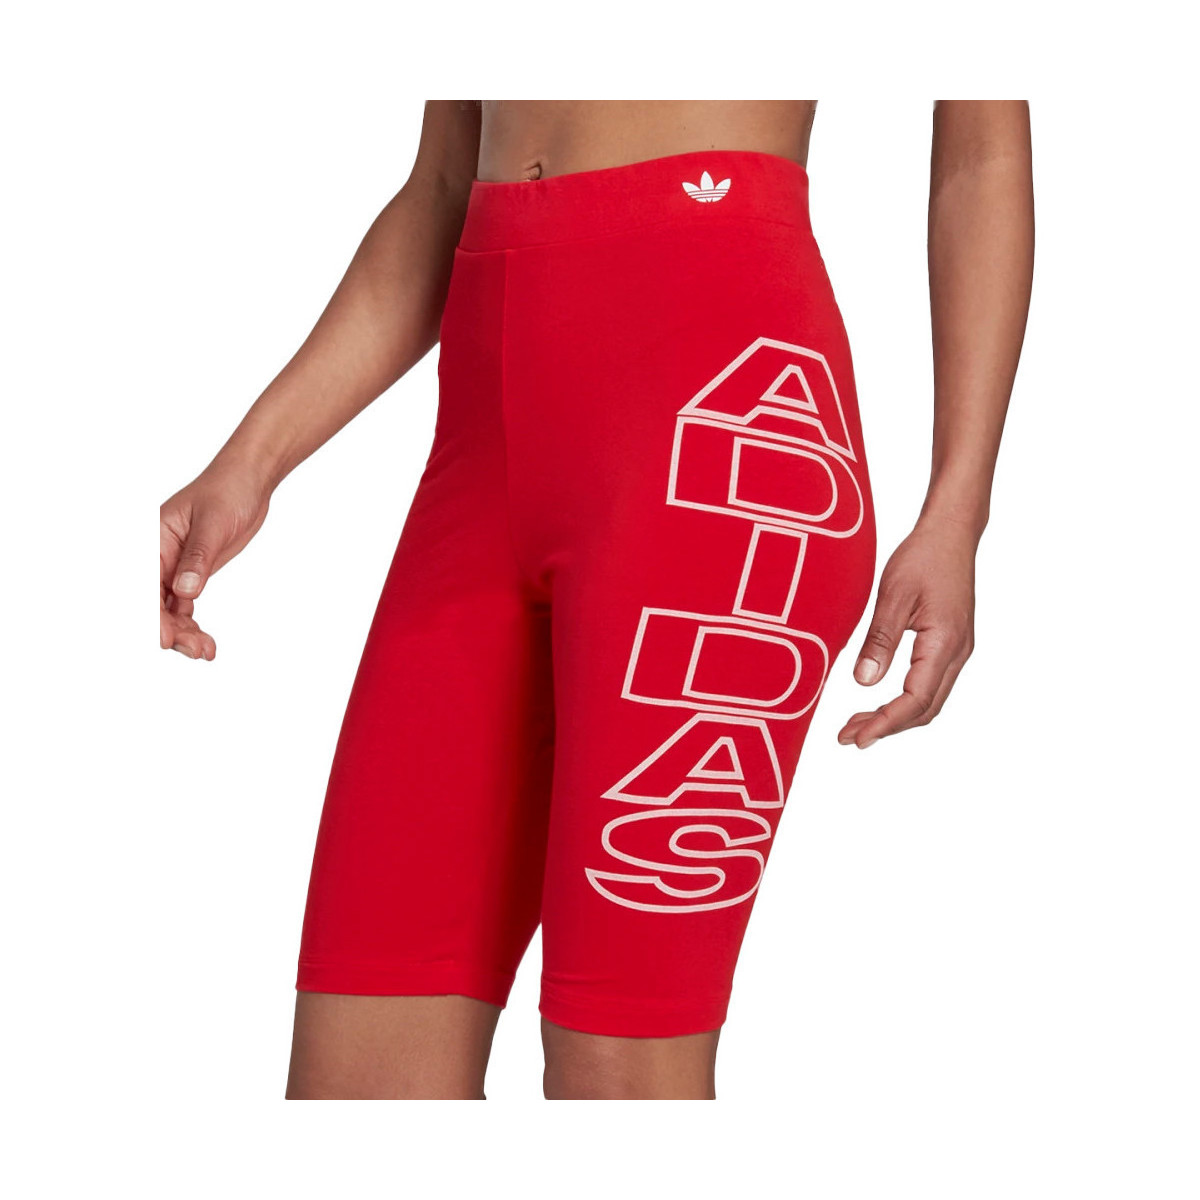 Vêtements Fille Shorts / Bermudas adidas Originals H20249 Rouge